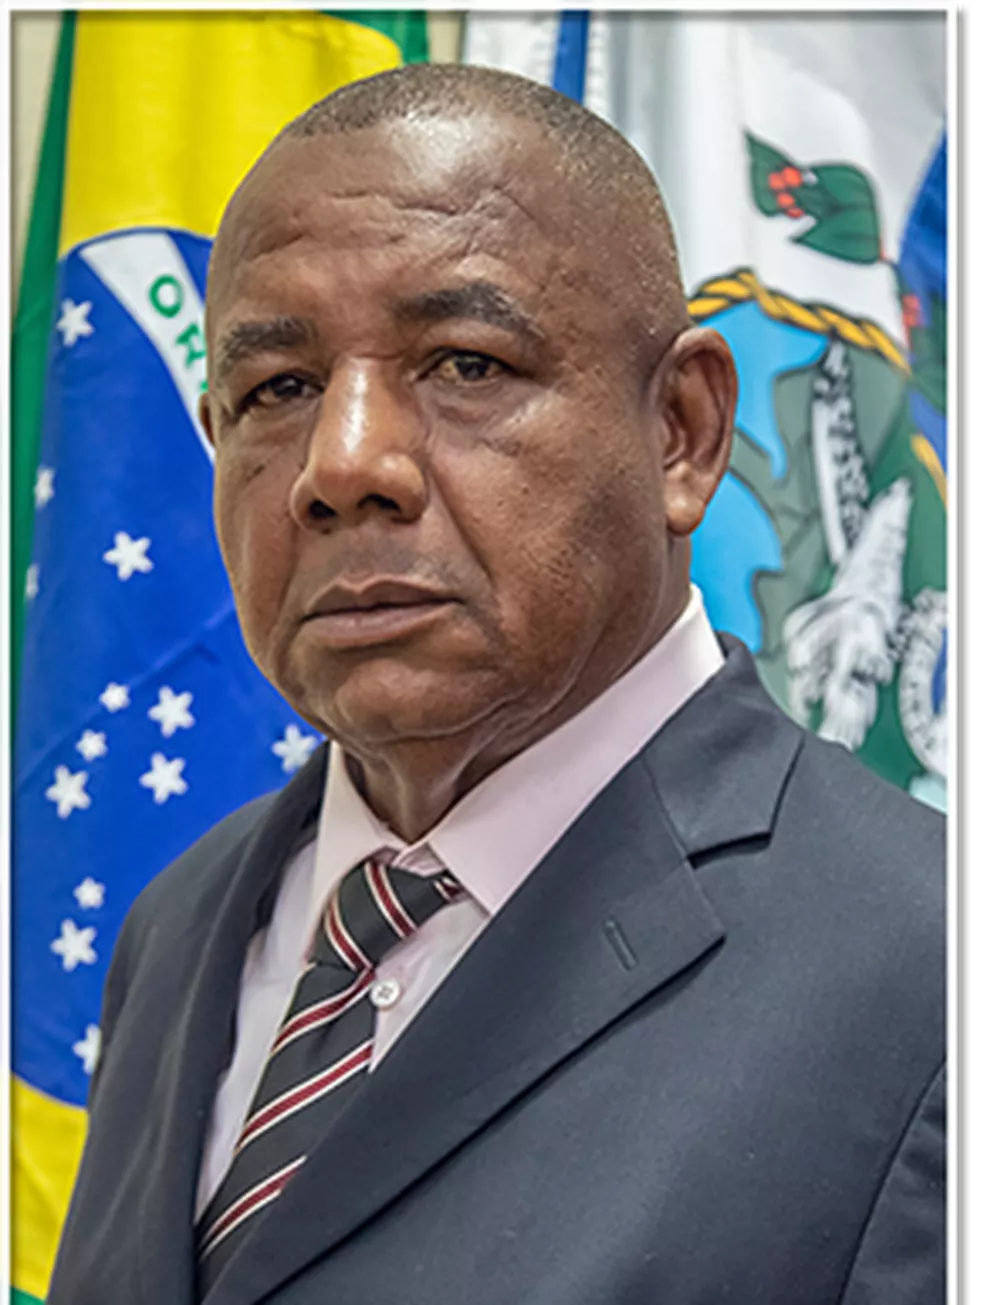  Quinzé era ex-policial militar - Reprodução/Câmara Municipal de Caxias 